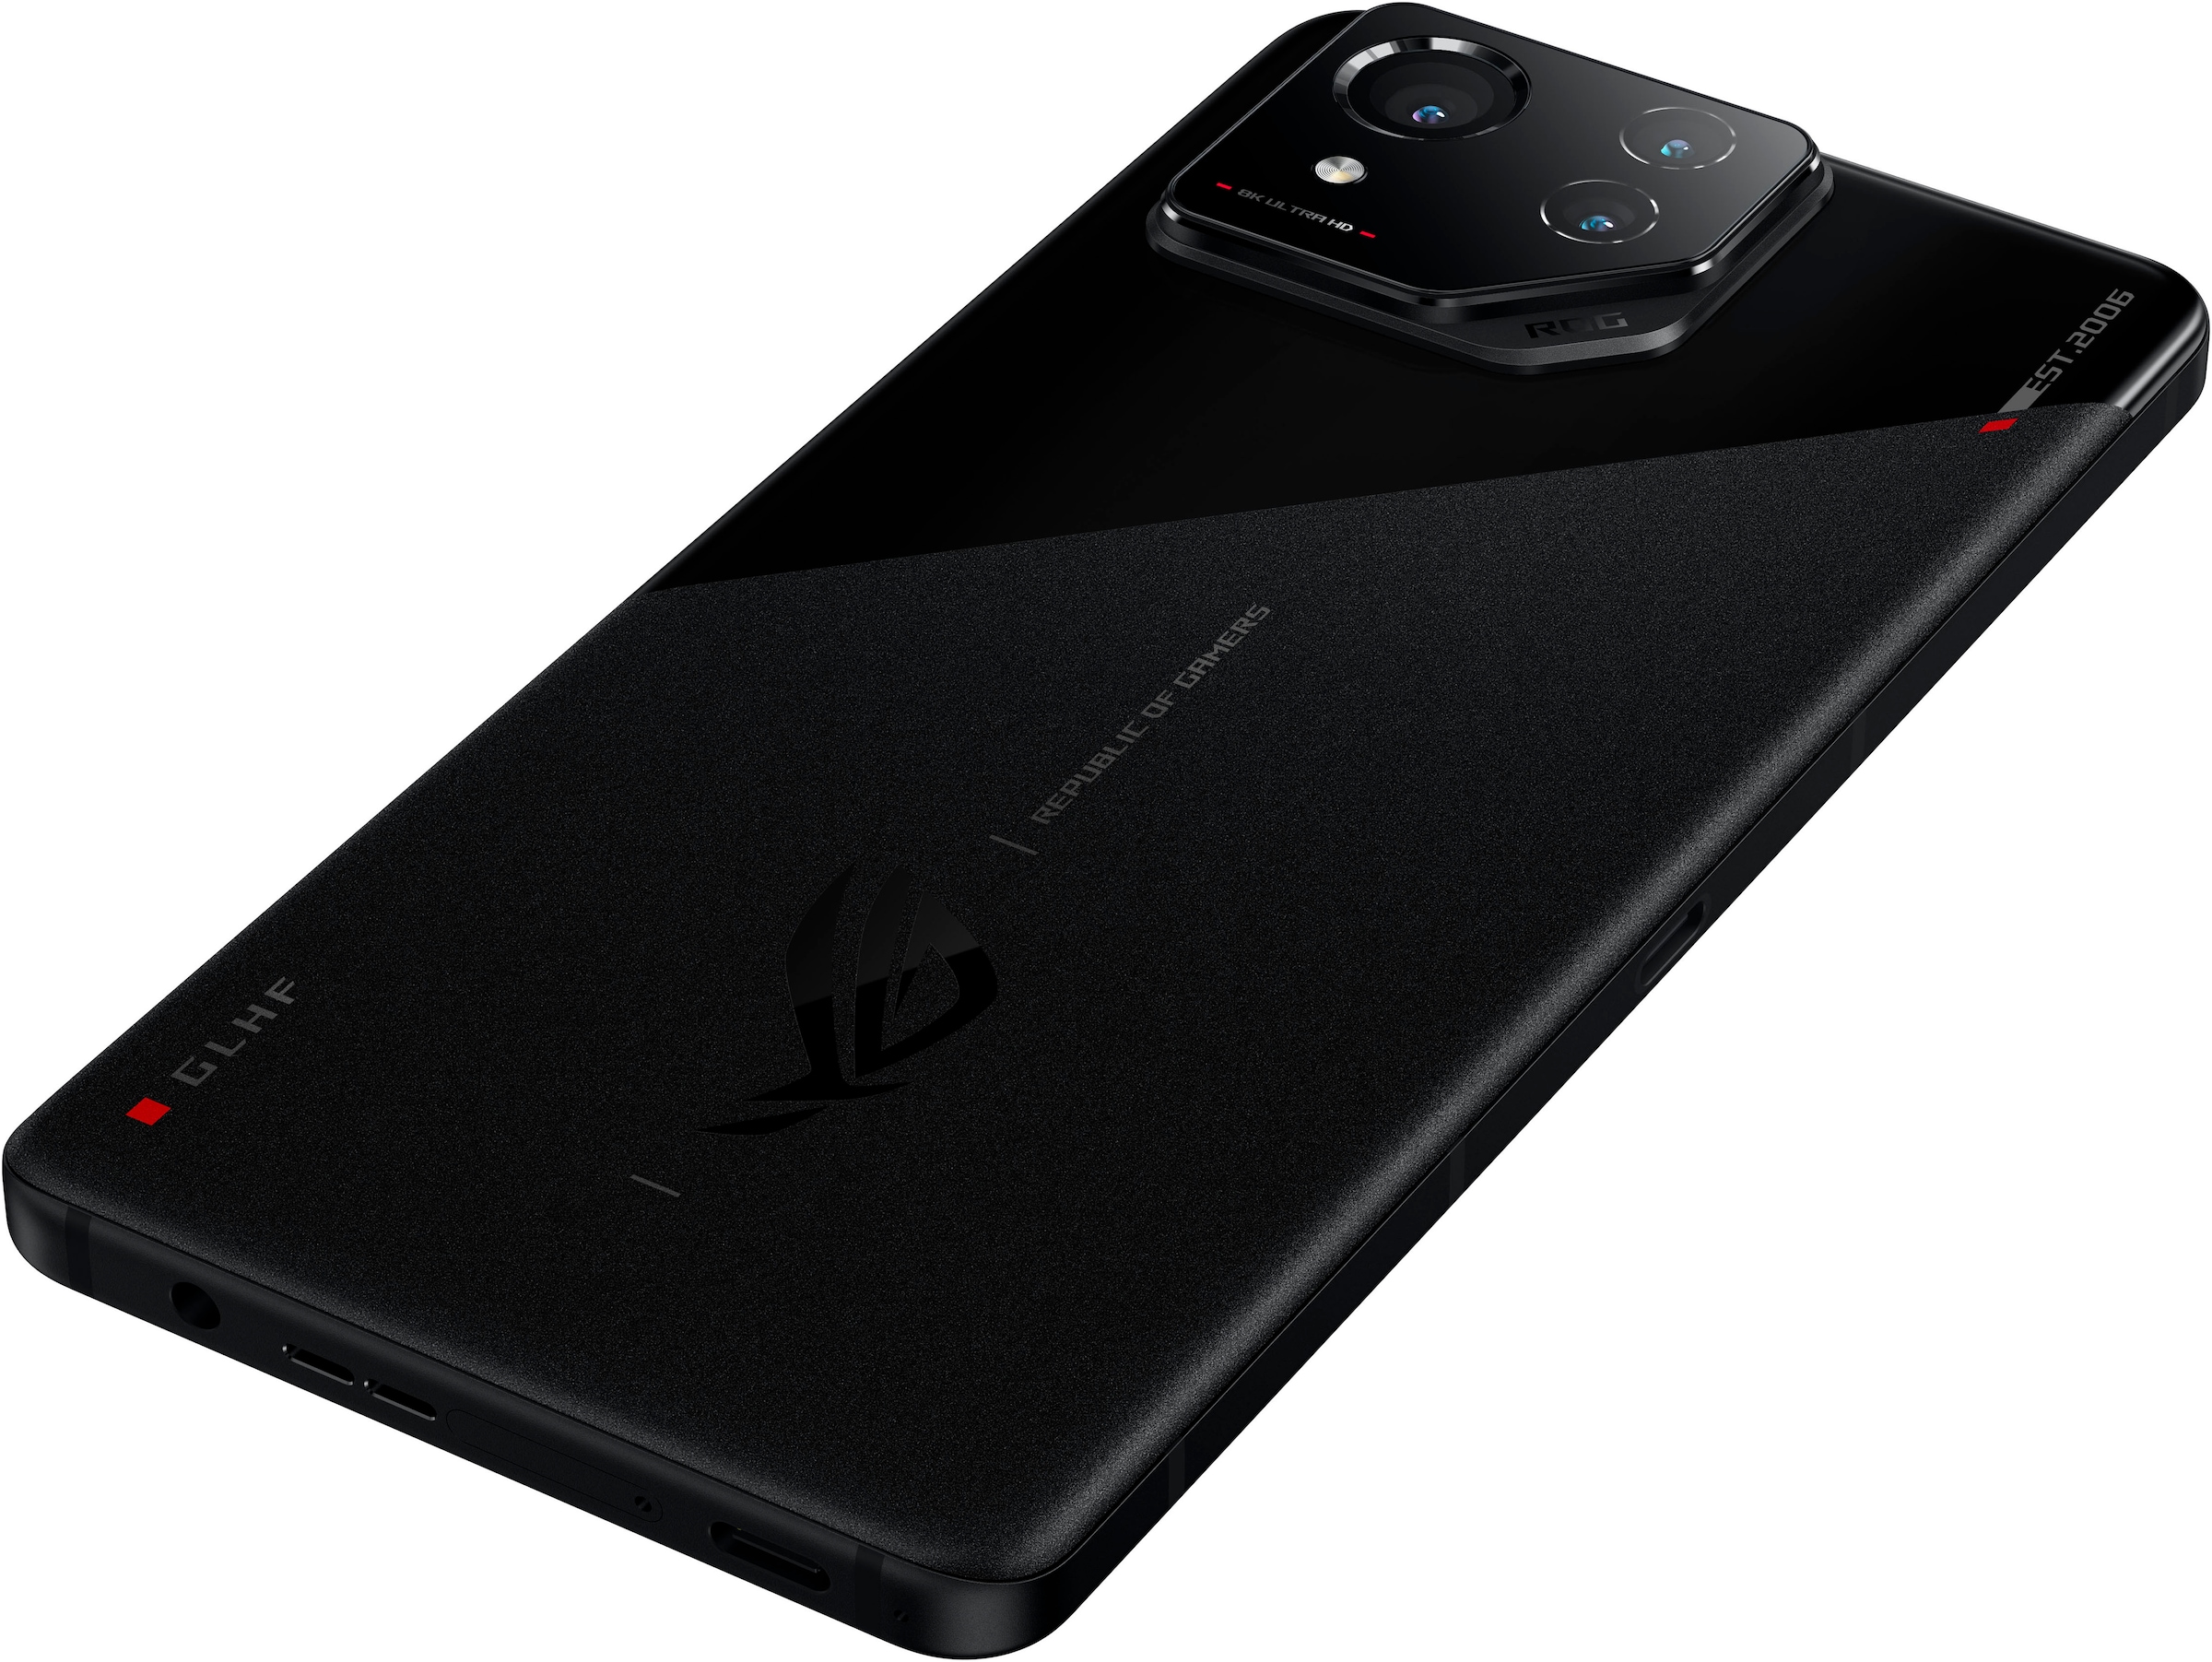 Asus Smartphone »Rog Phone 8«, schwarz, 17,22 cm/6,78 Zoll, 256 GB Speicherplatz, 50 MP Kamera